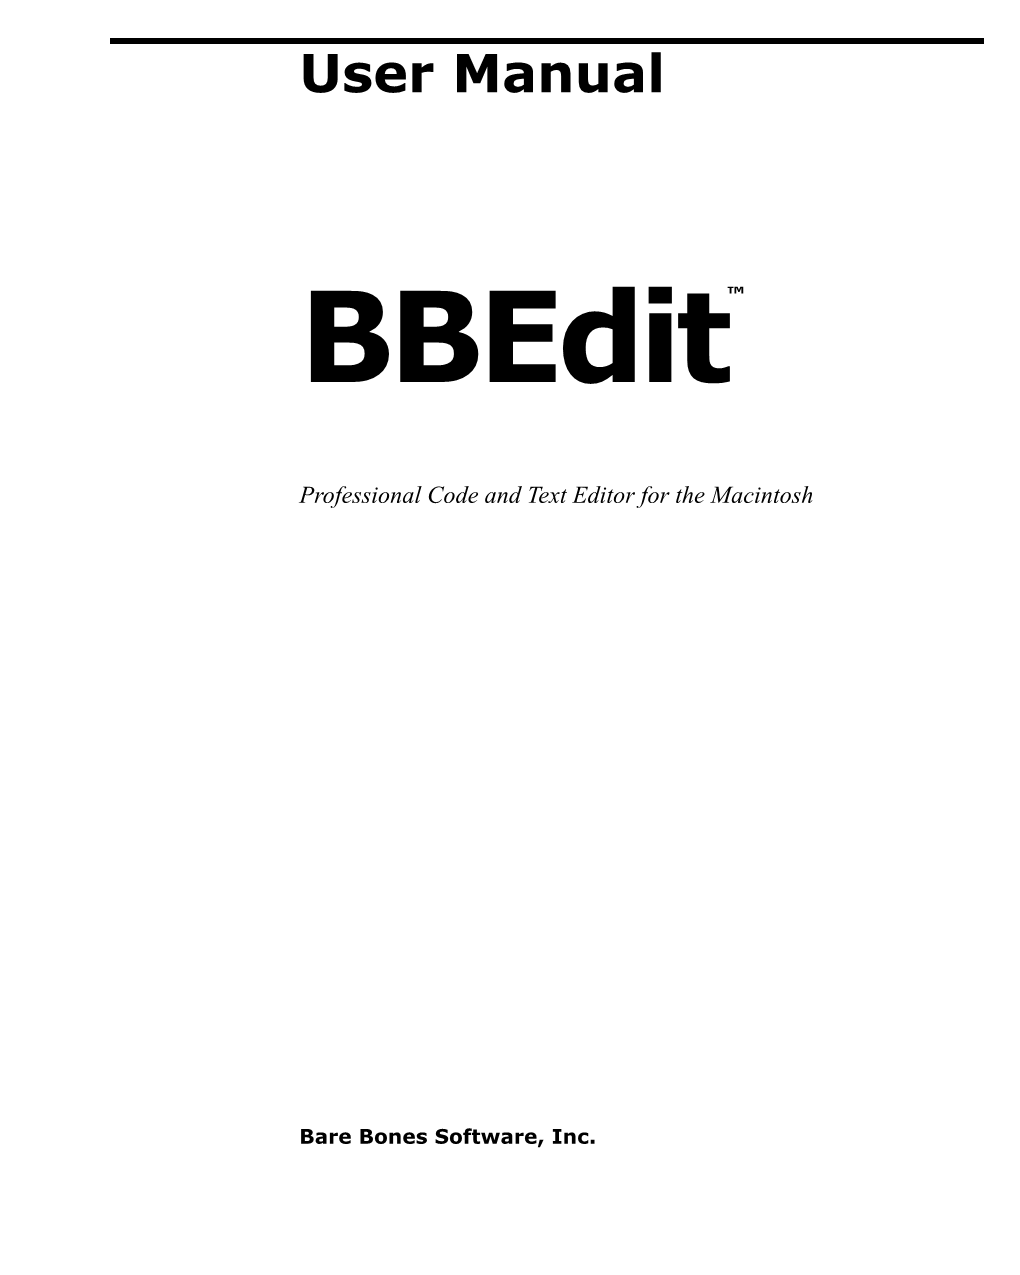 Bbedit 12.6.3 User Manual